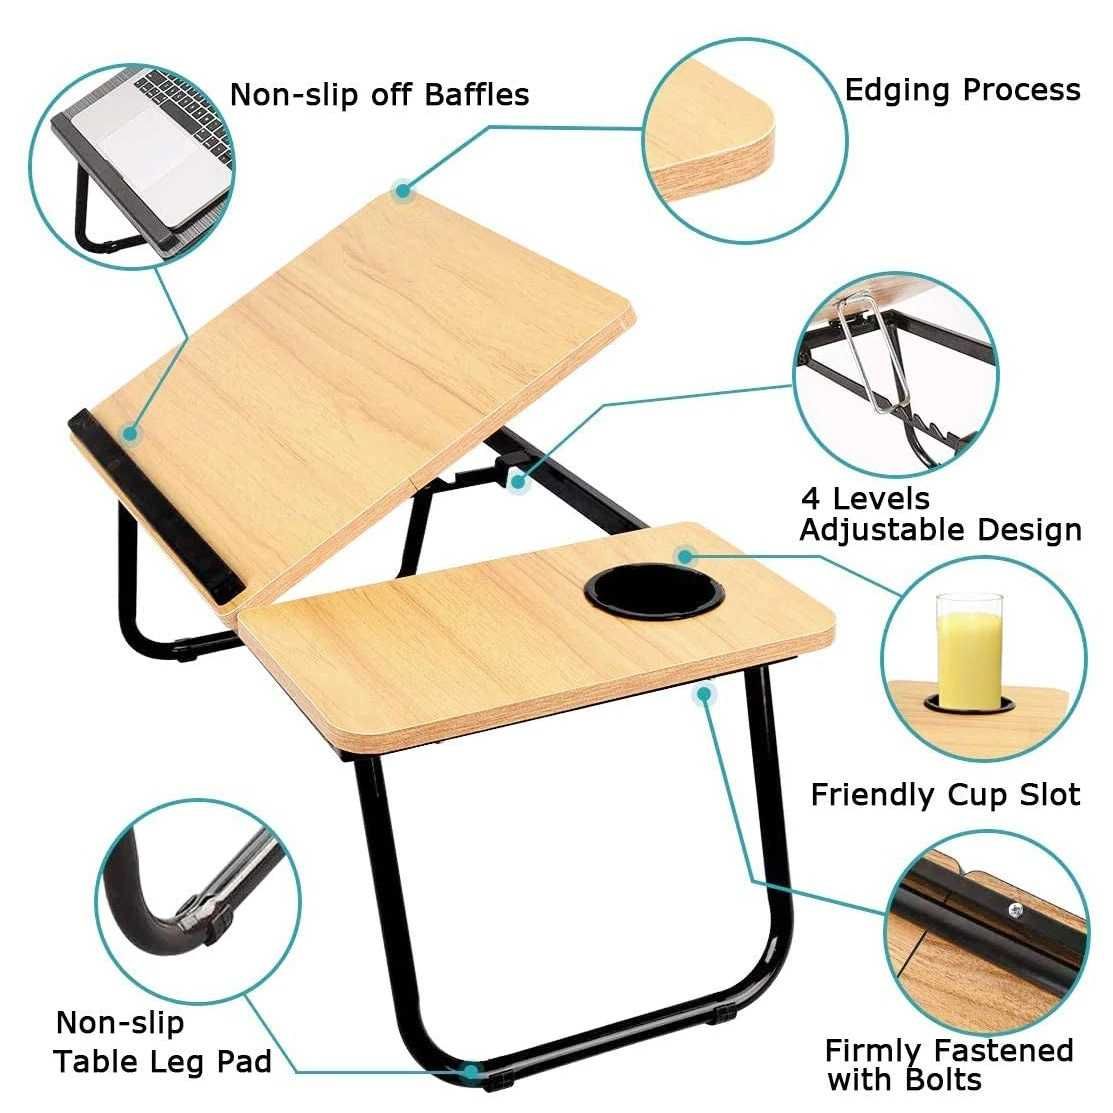 Beżowy stolik pod laptopa lub TABLET z regulowanym blatem